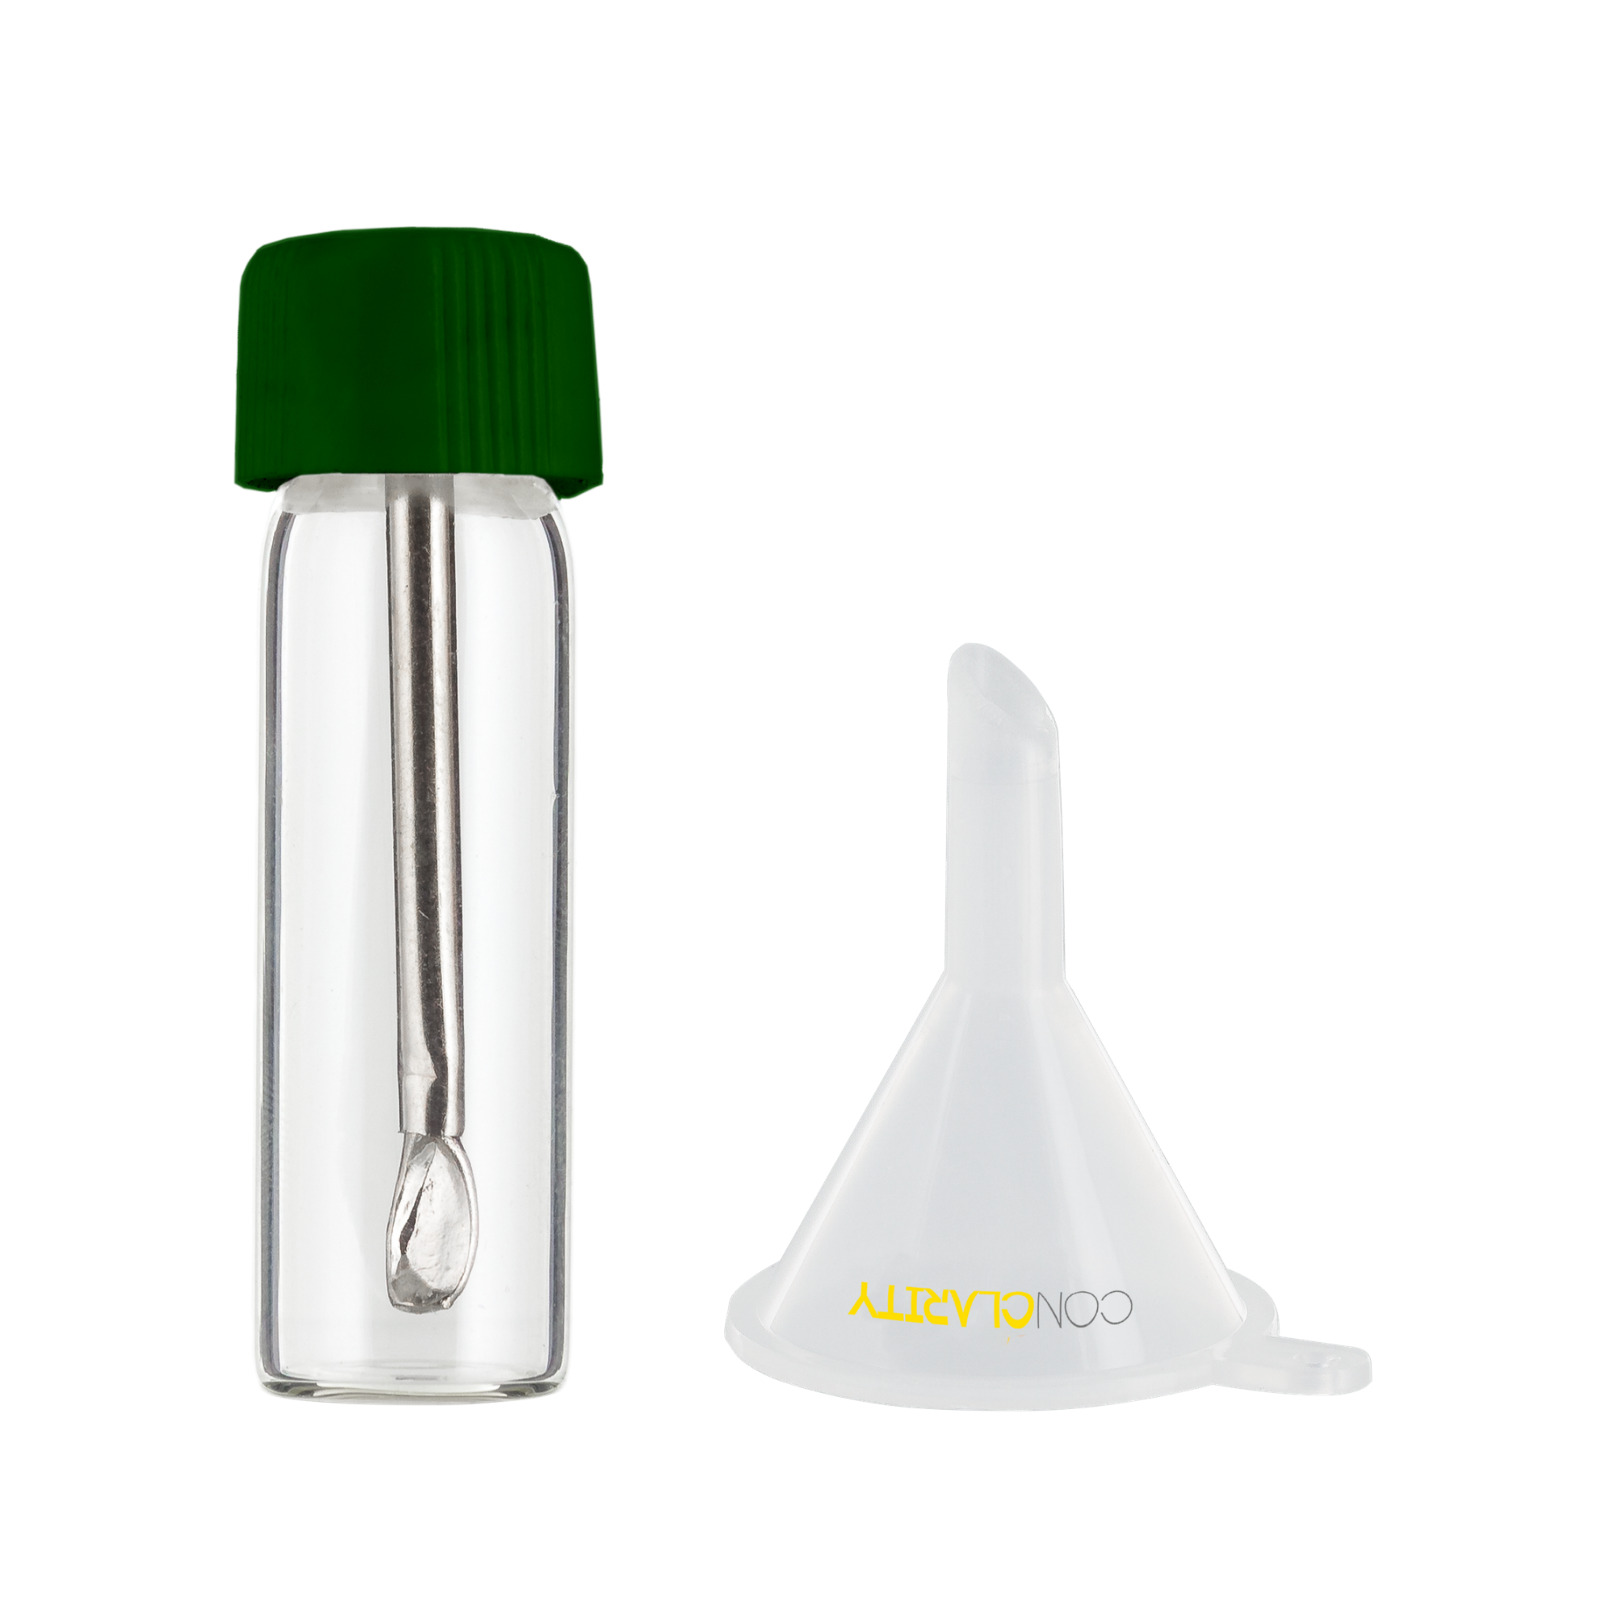 Premium 1.5g Green Safety Portion Cap Pepper Shaker Bullet